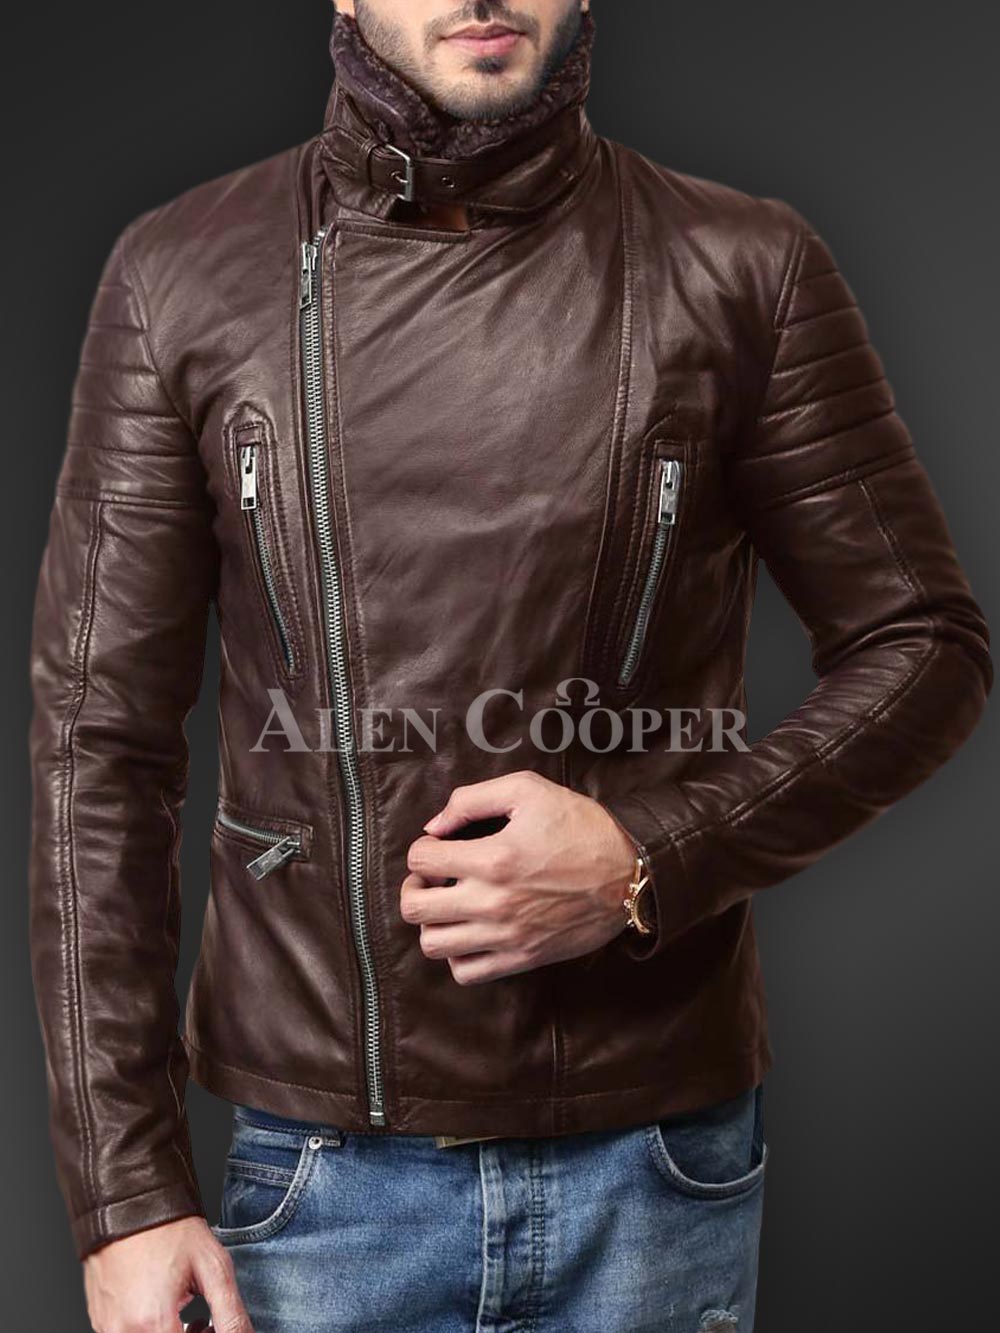 Premium Leather Jacket | Premium Jacket - Jacketars-thanhphatduhoc.com.vn